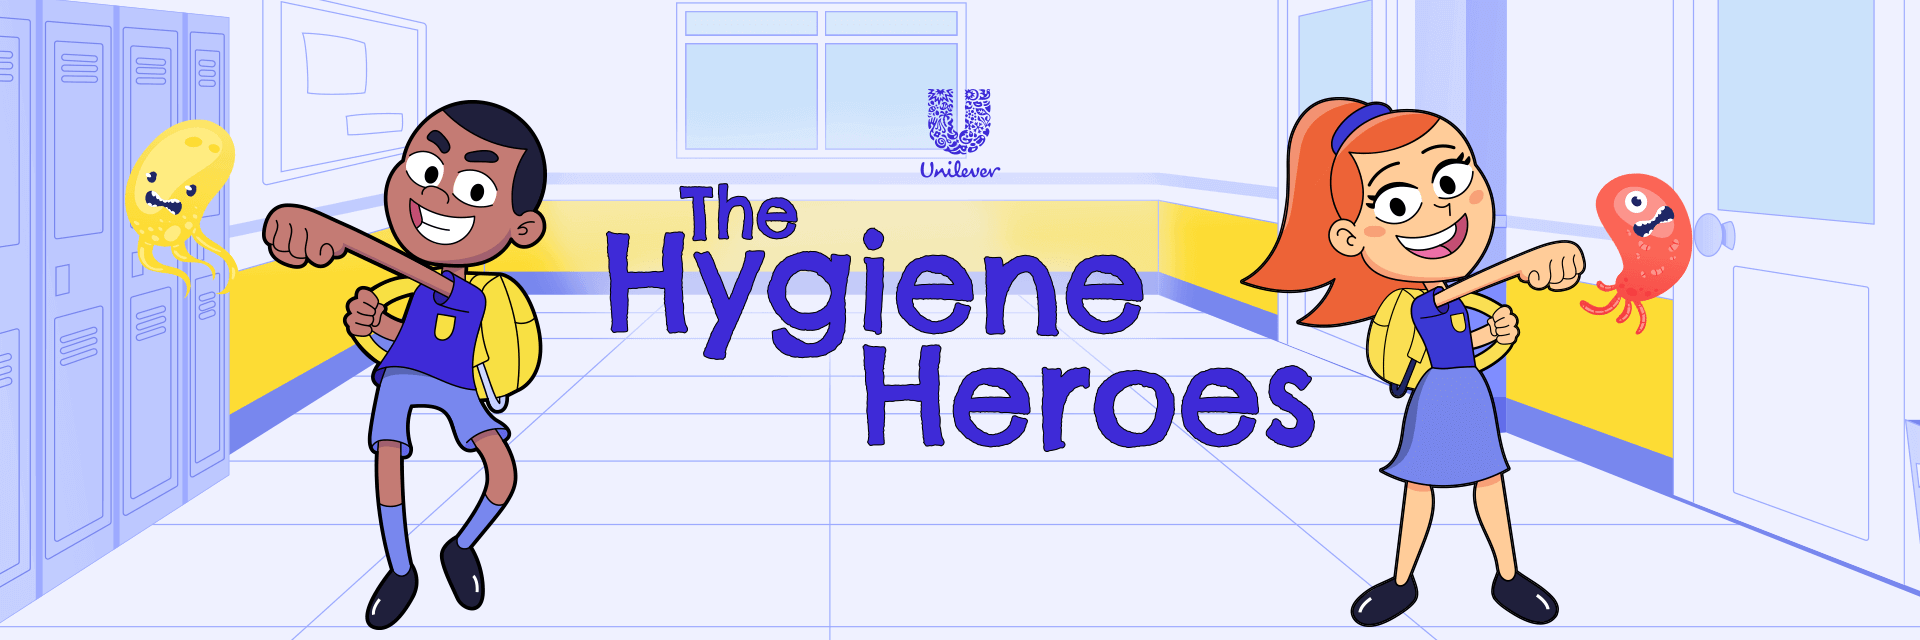 Unilever – Hygiene Heroes